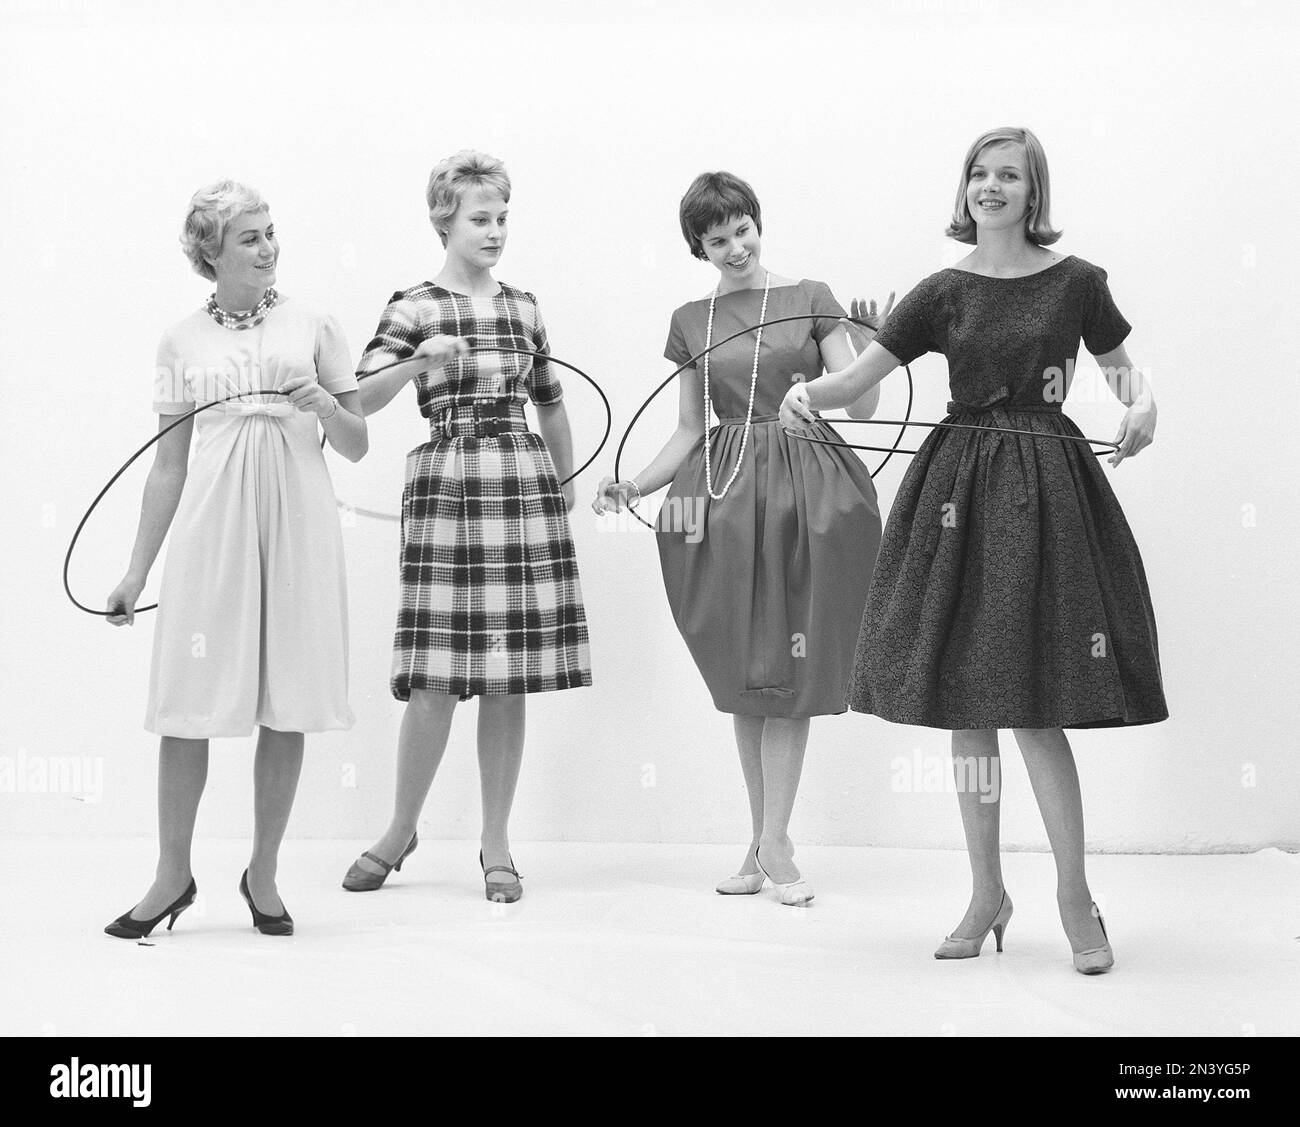 Dans le 1950s. Hula boucle pour femmes. Une folie qui a culminé en 1958 avec quelque 20 millions de bagues de hula vendues en moins de quatre mois aux États-Unis. Suède 1958 réf. BV18-1 Banque D'Images